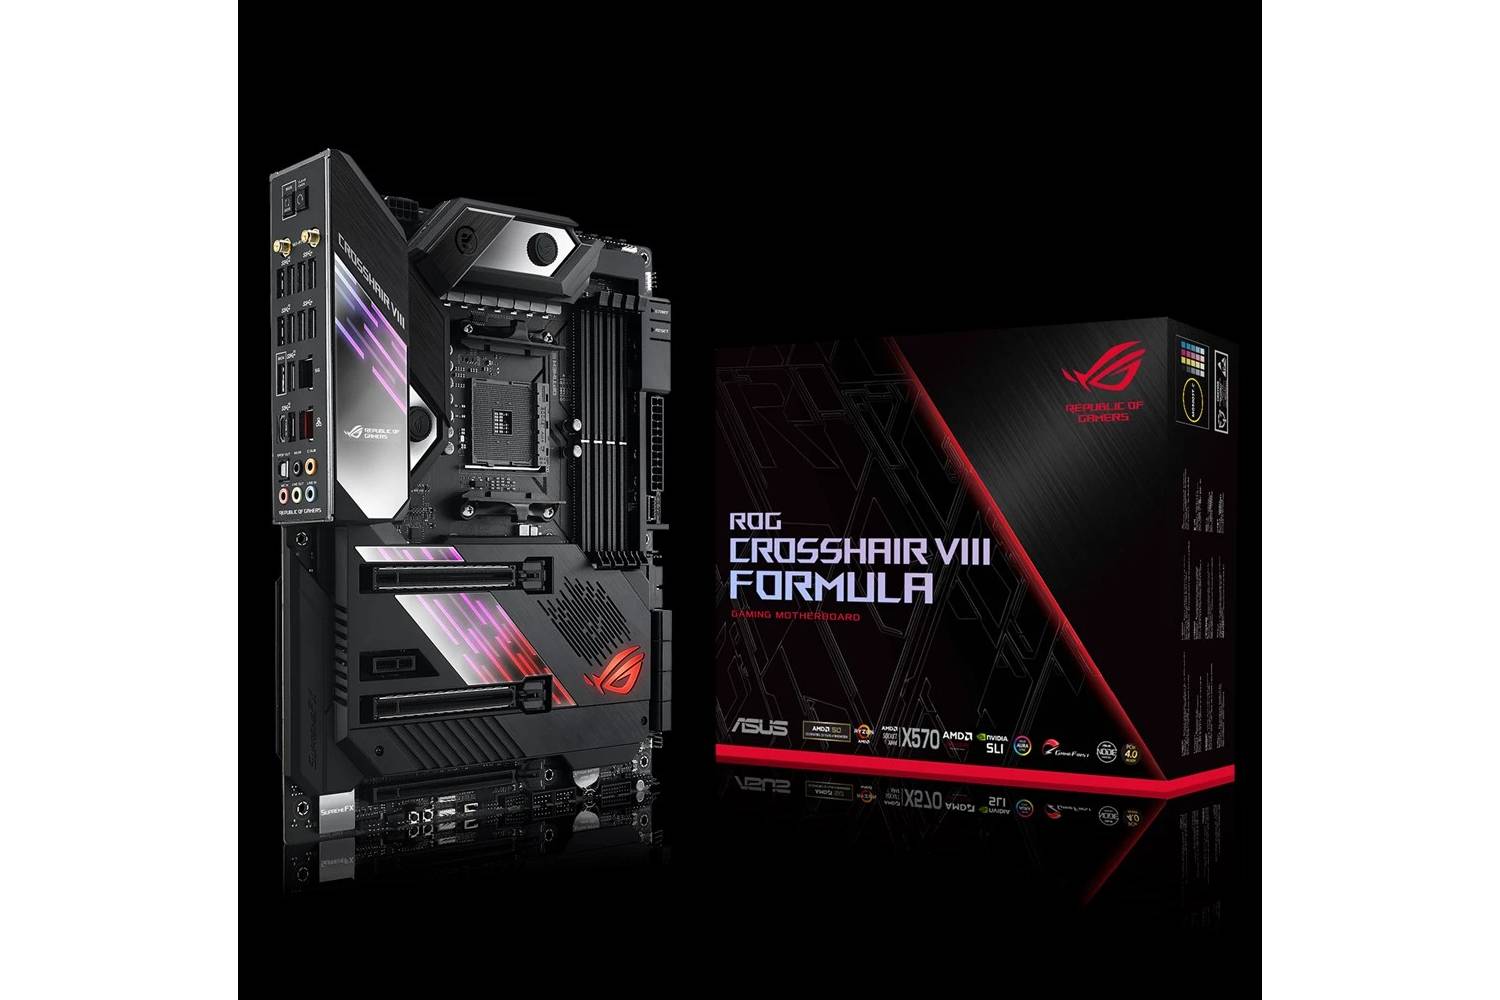 ASUS ROG Crosshair VIII Formula AMD X570 ATX gaming motherboard-Motherboard-ASUS-computerspace